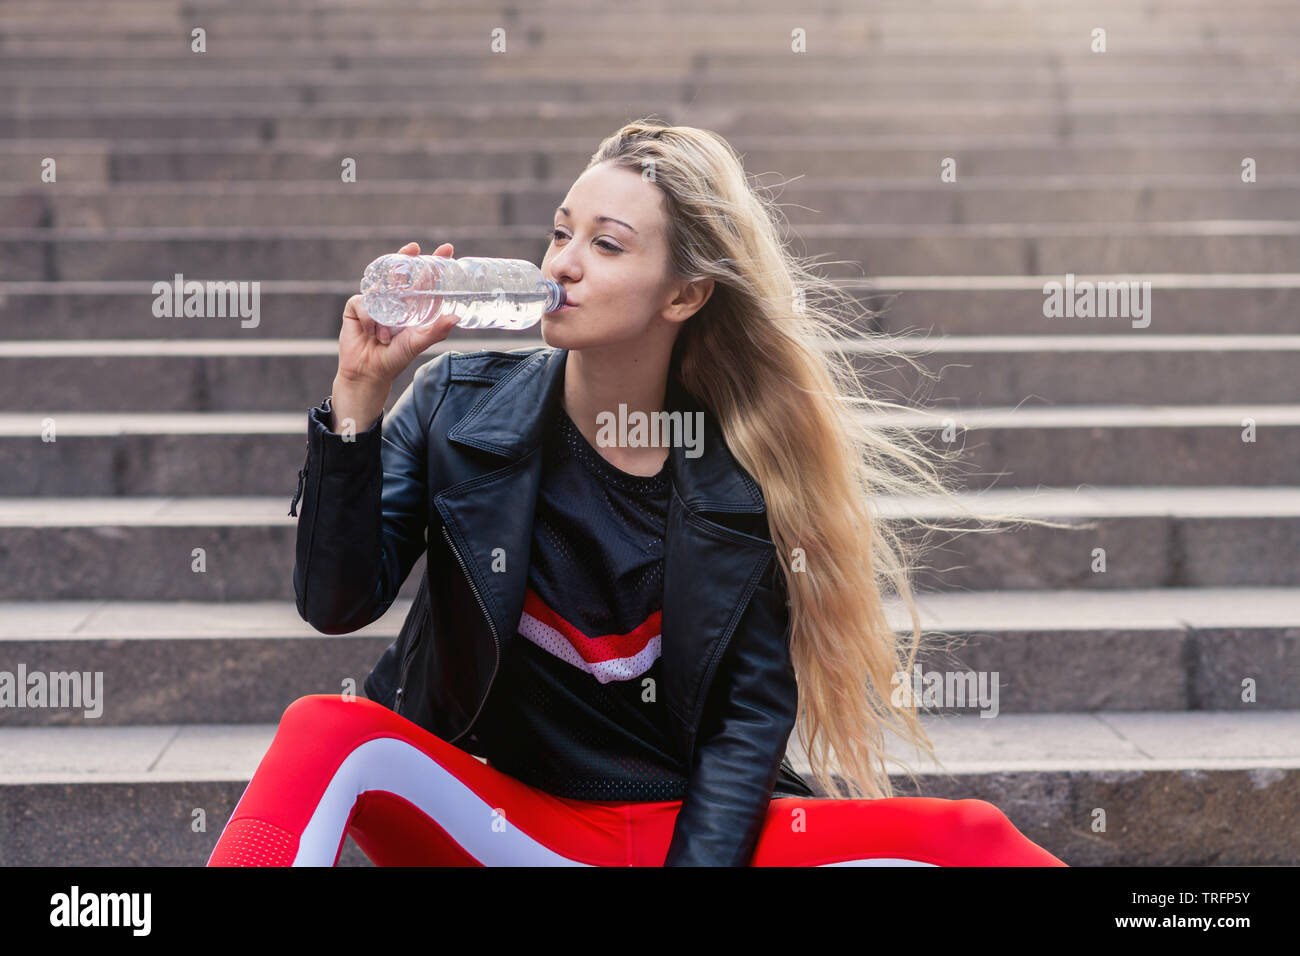 Junge Frau in Active Wear sitzen auf Treppen mit Wasserflasche. sie trägt rote Übung Hosen und rote Schuhe. Stockfoto